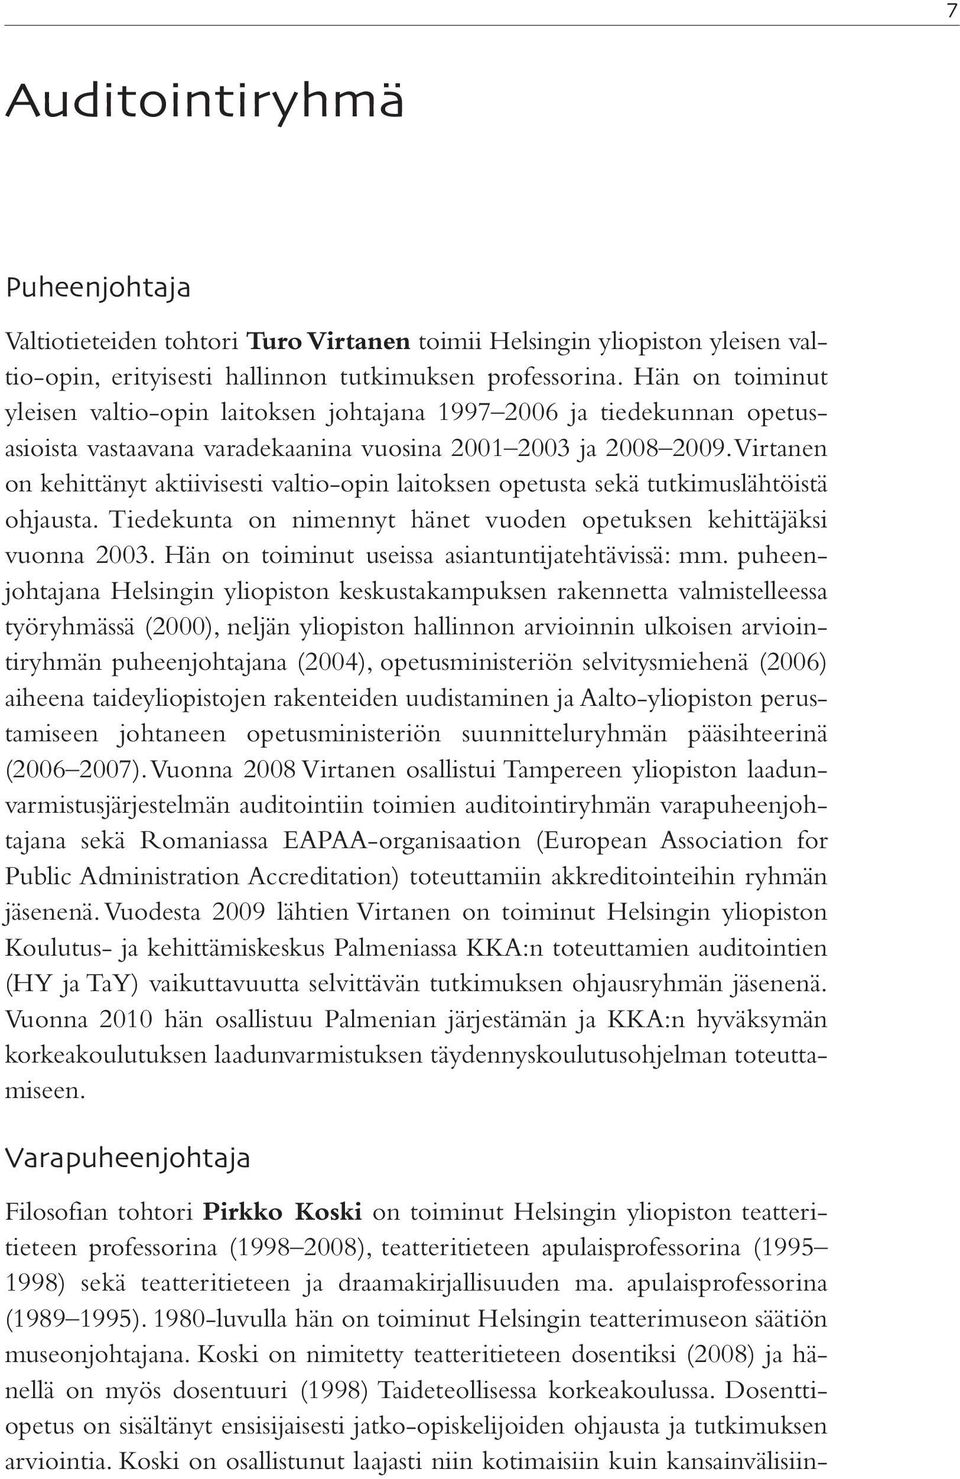 Virtanen on kehittänyt aktiivisesti valtio-opin laitoksen opetusta sekä tutkimuslähtöistä ohjausta. Tiedekunta on nimennyt hänet vuoden opetuksen kehittäjäksi vuonna 2003.